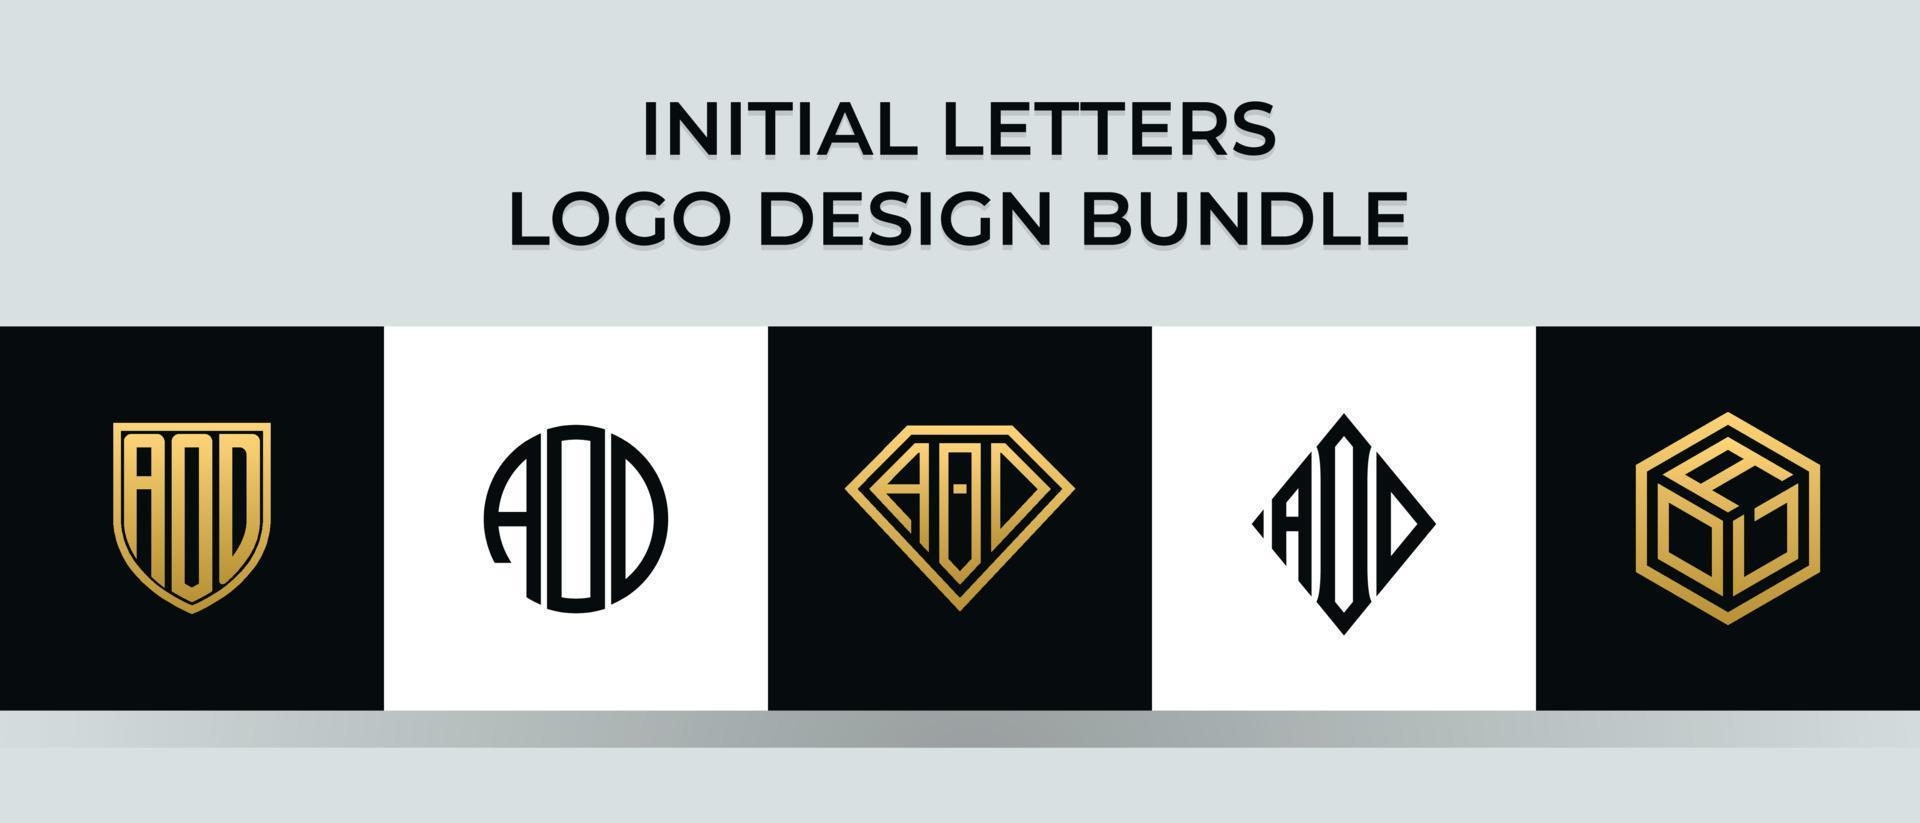 letras iniciales aod logo diseños paquete vector